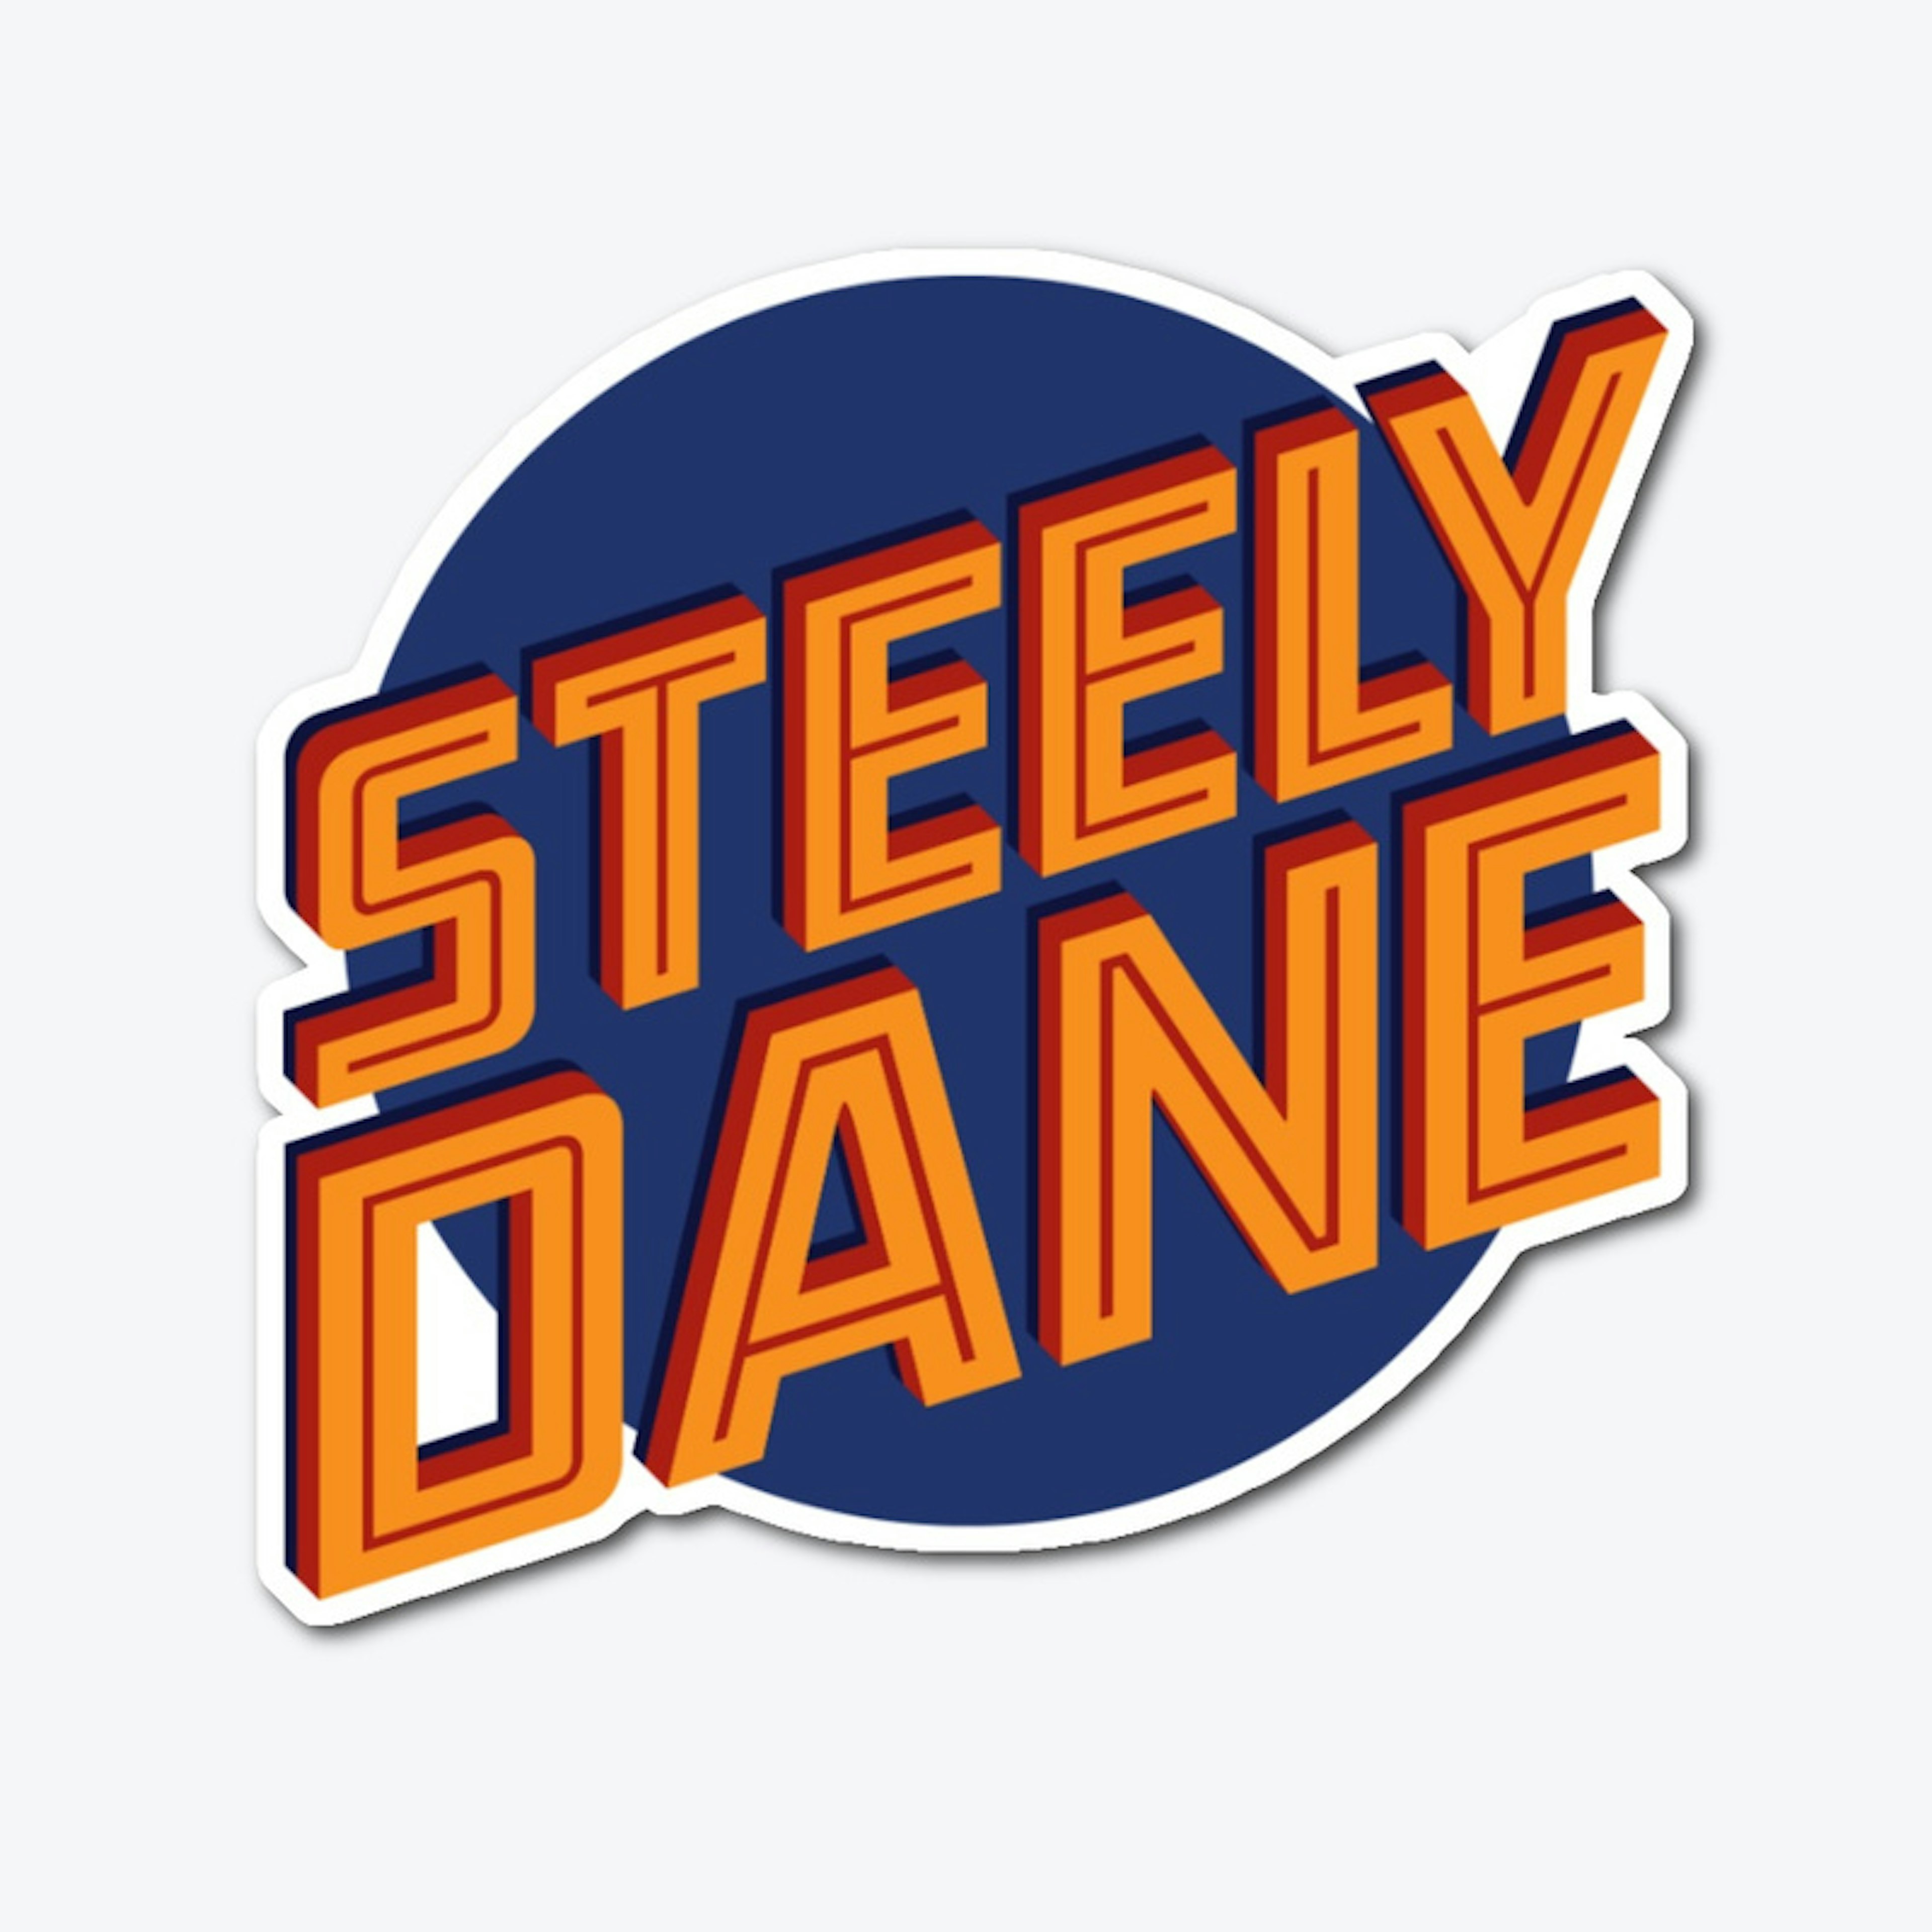 Steely Dane Die Cut Sticker